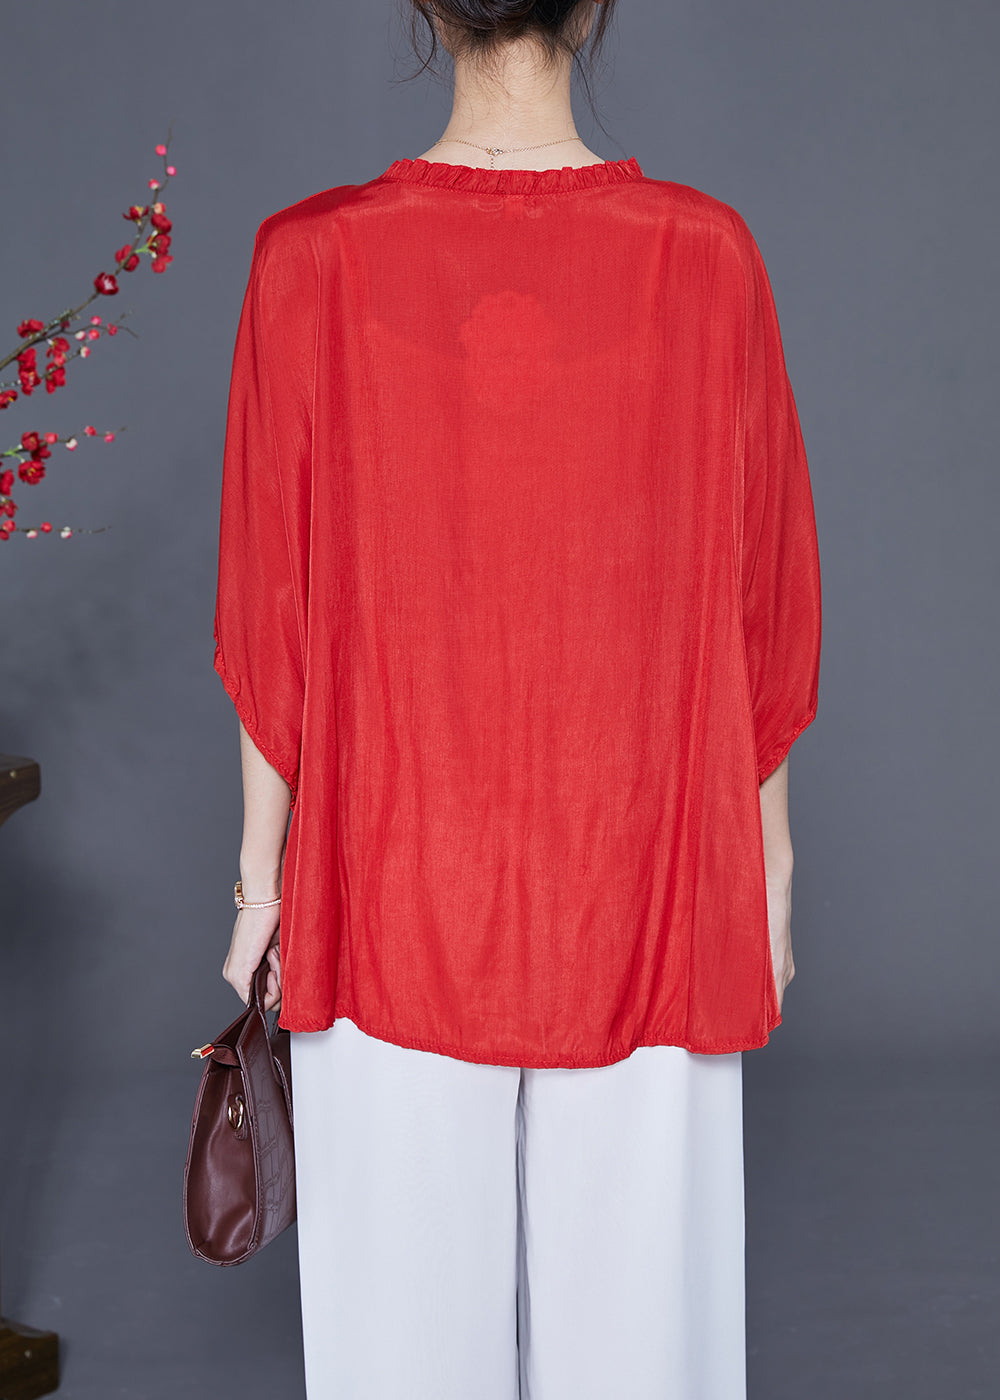 Plus Size Red O-Neck Oversized Wrinkled Silk Blouses Batwing Sleeve LY2322 - fabuloryshop